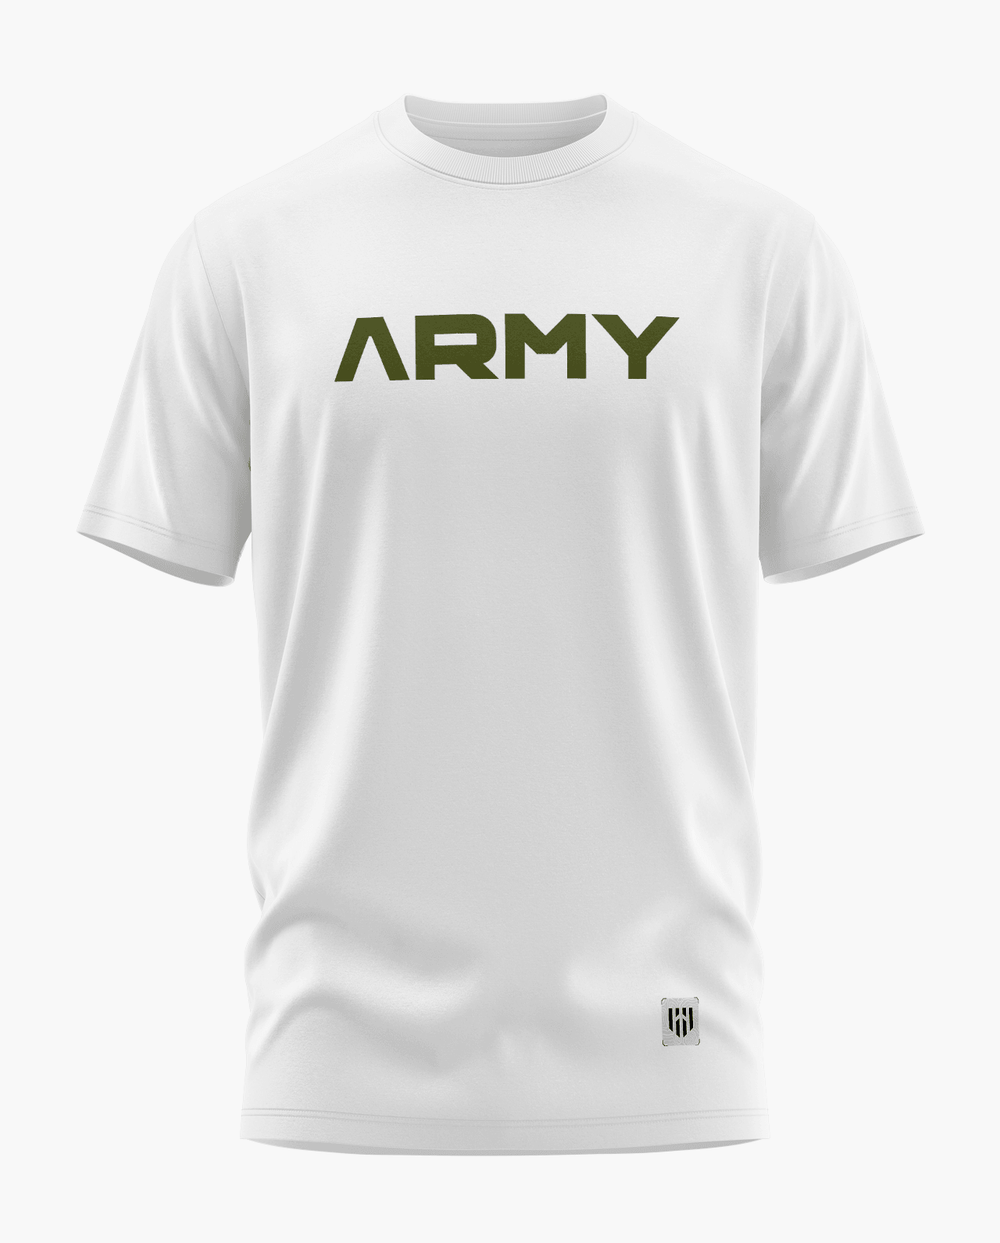 Army Pride T-Shirt - Aero Armour